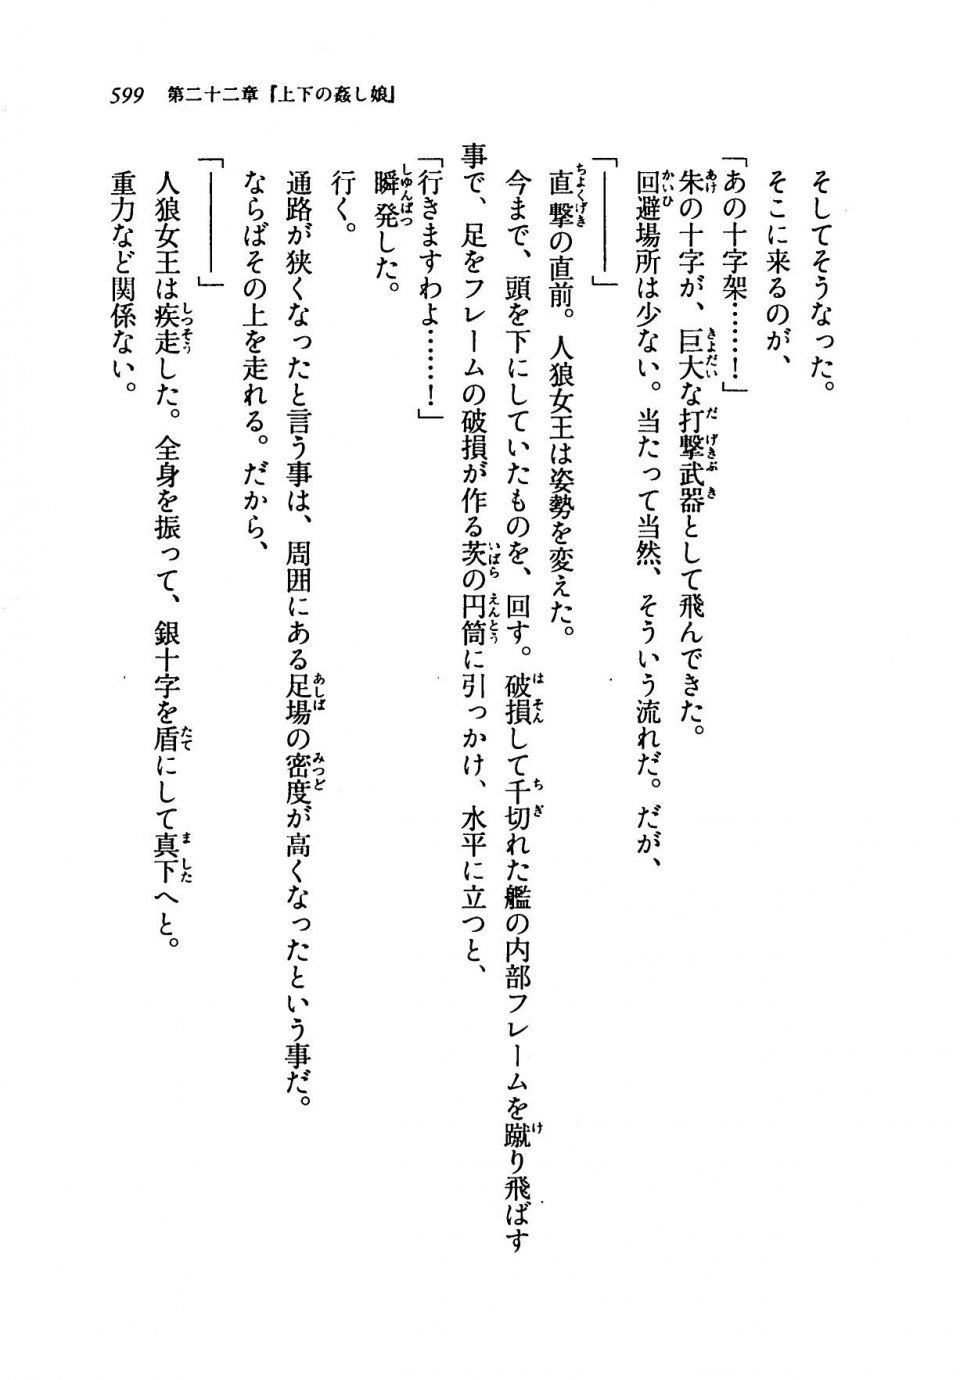 Kyoukai Senjou no Horizon LN Vol 19(8A) - Photo #599